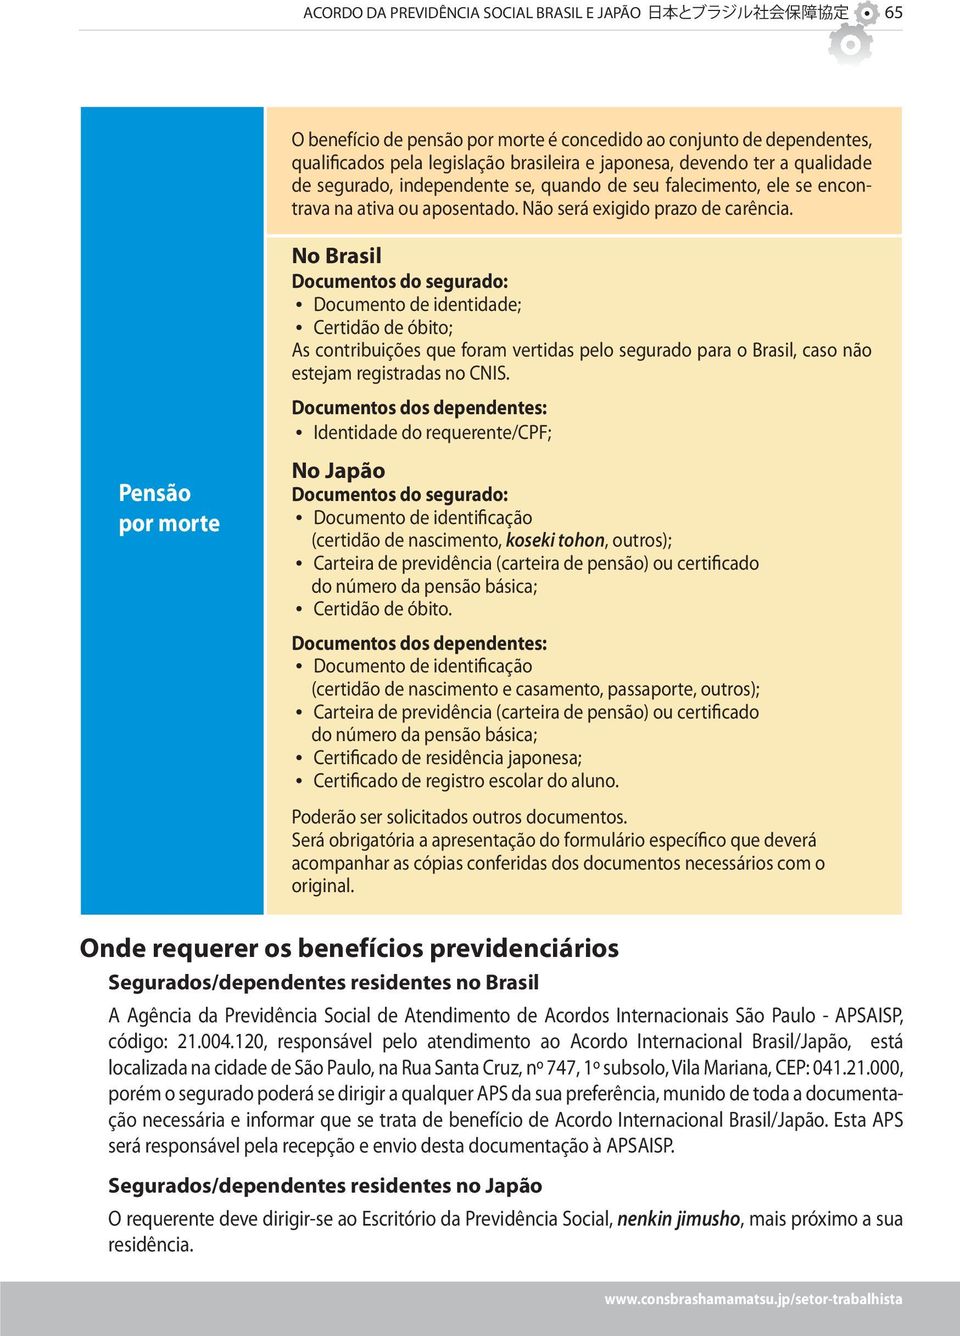 Pensão por morte No Brasil Documentos do segurado: Documento de identidade; Certidão de óbito; As contribuições que foram vertidas pelo segurado para o Brasil, caso não estejam registradas no CNIS.